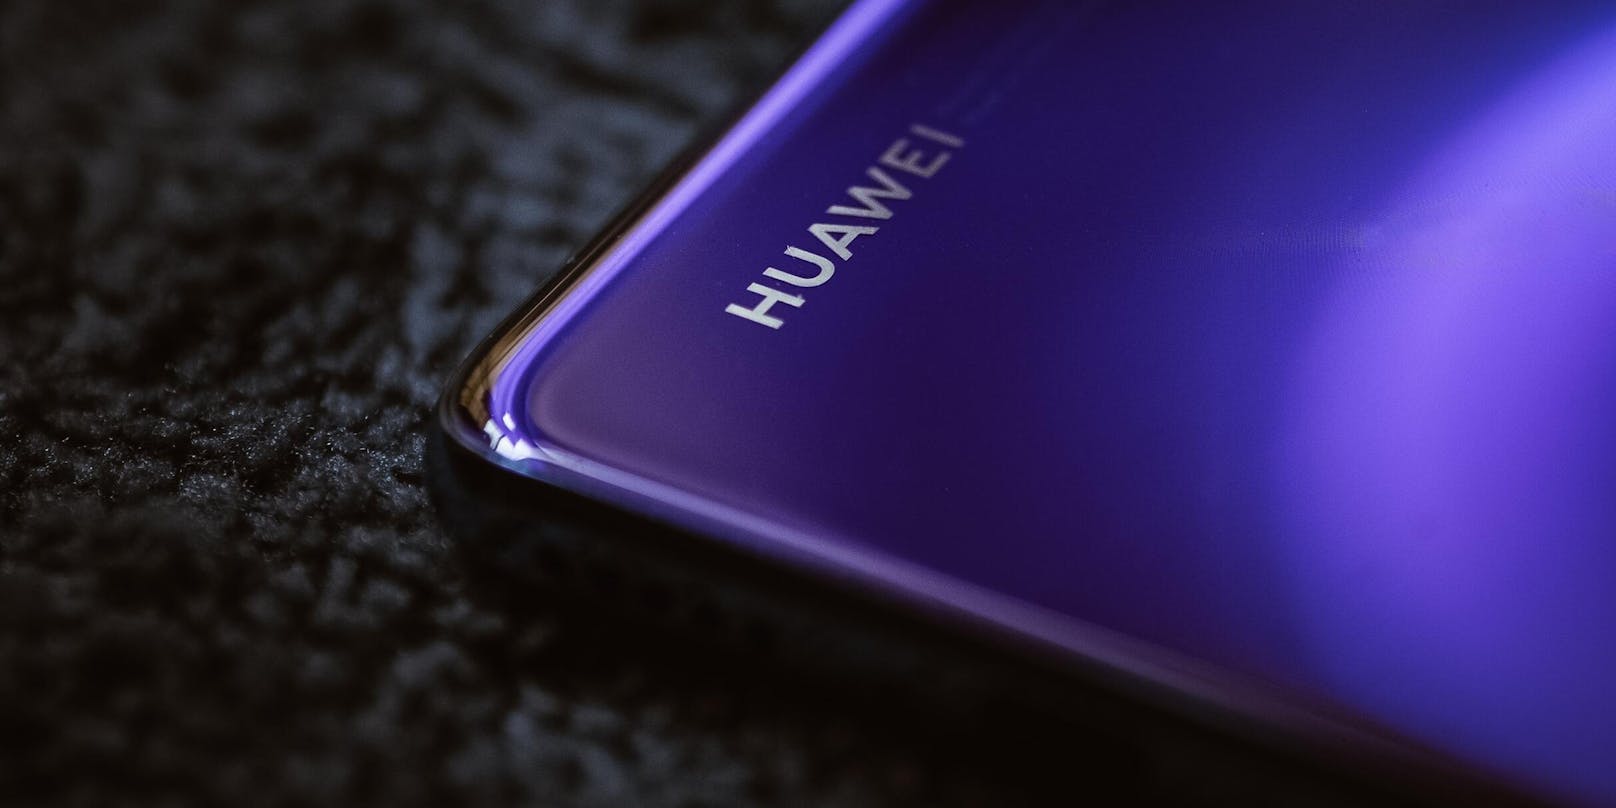  Ein aufgetauchtes Patent zeigt, dass eines der nächsten Huawei-Smartphones die Frontkamera unter dem Display verbauen könnte.